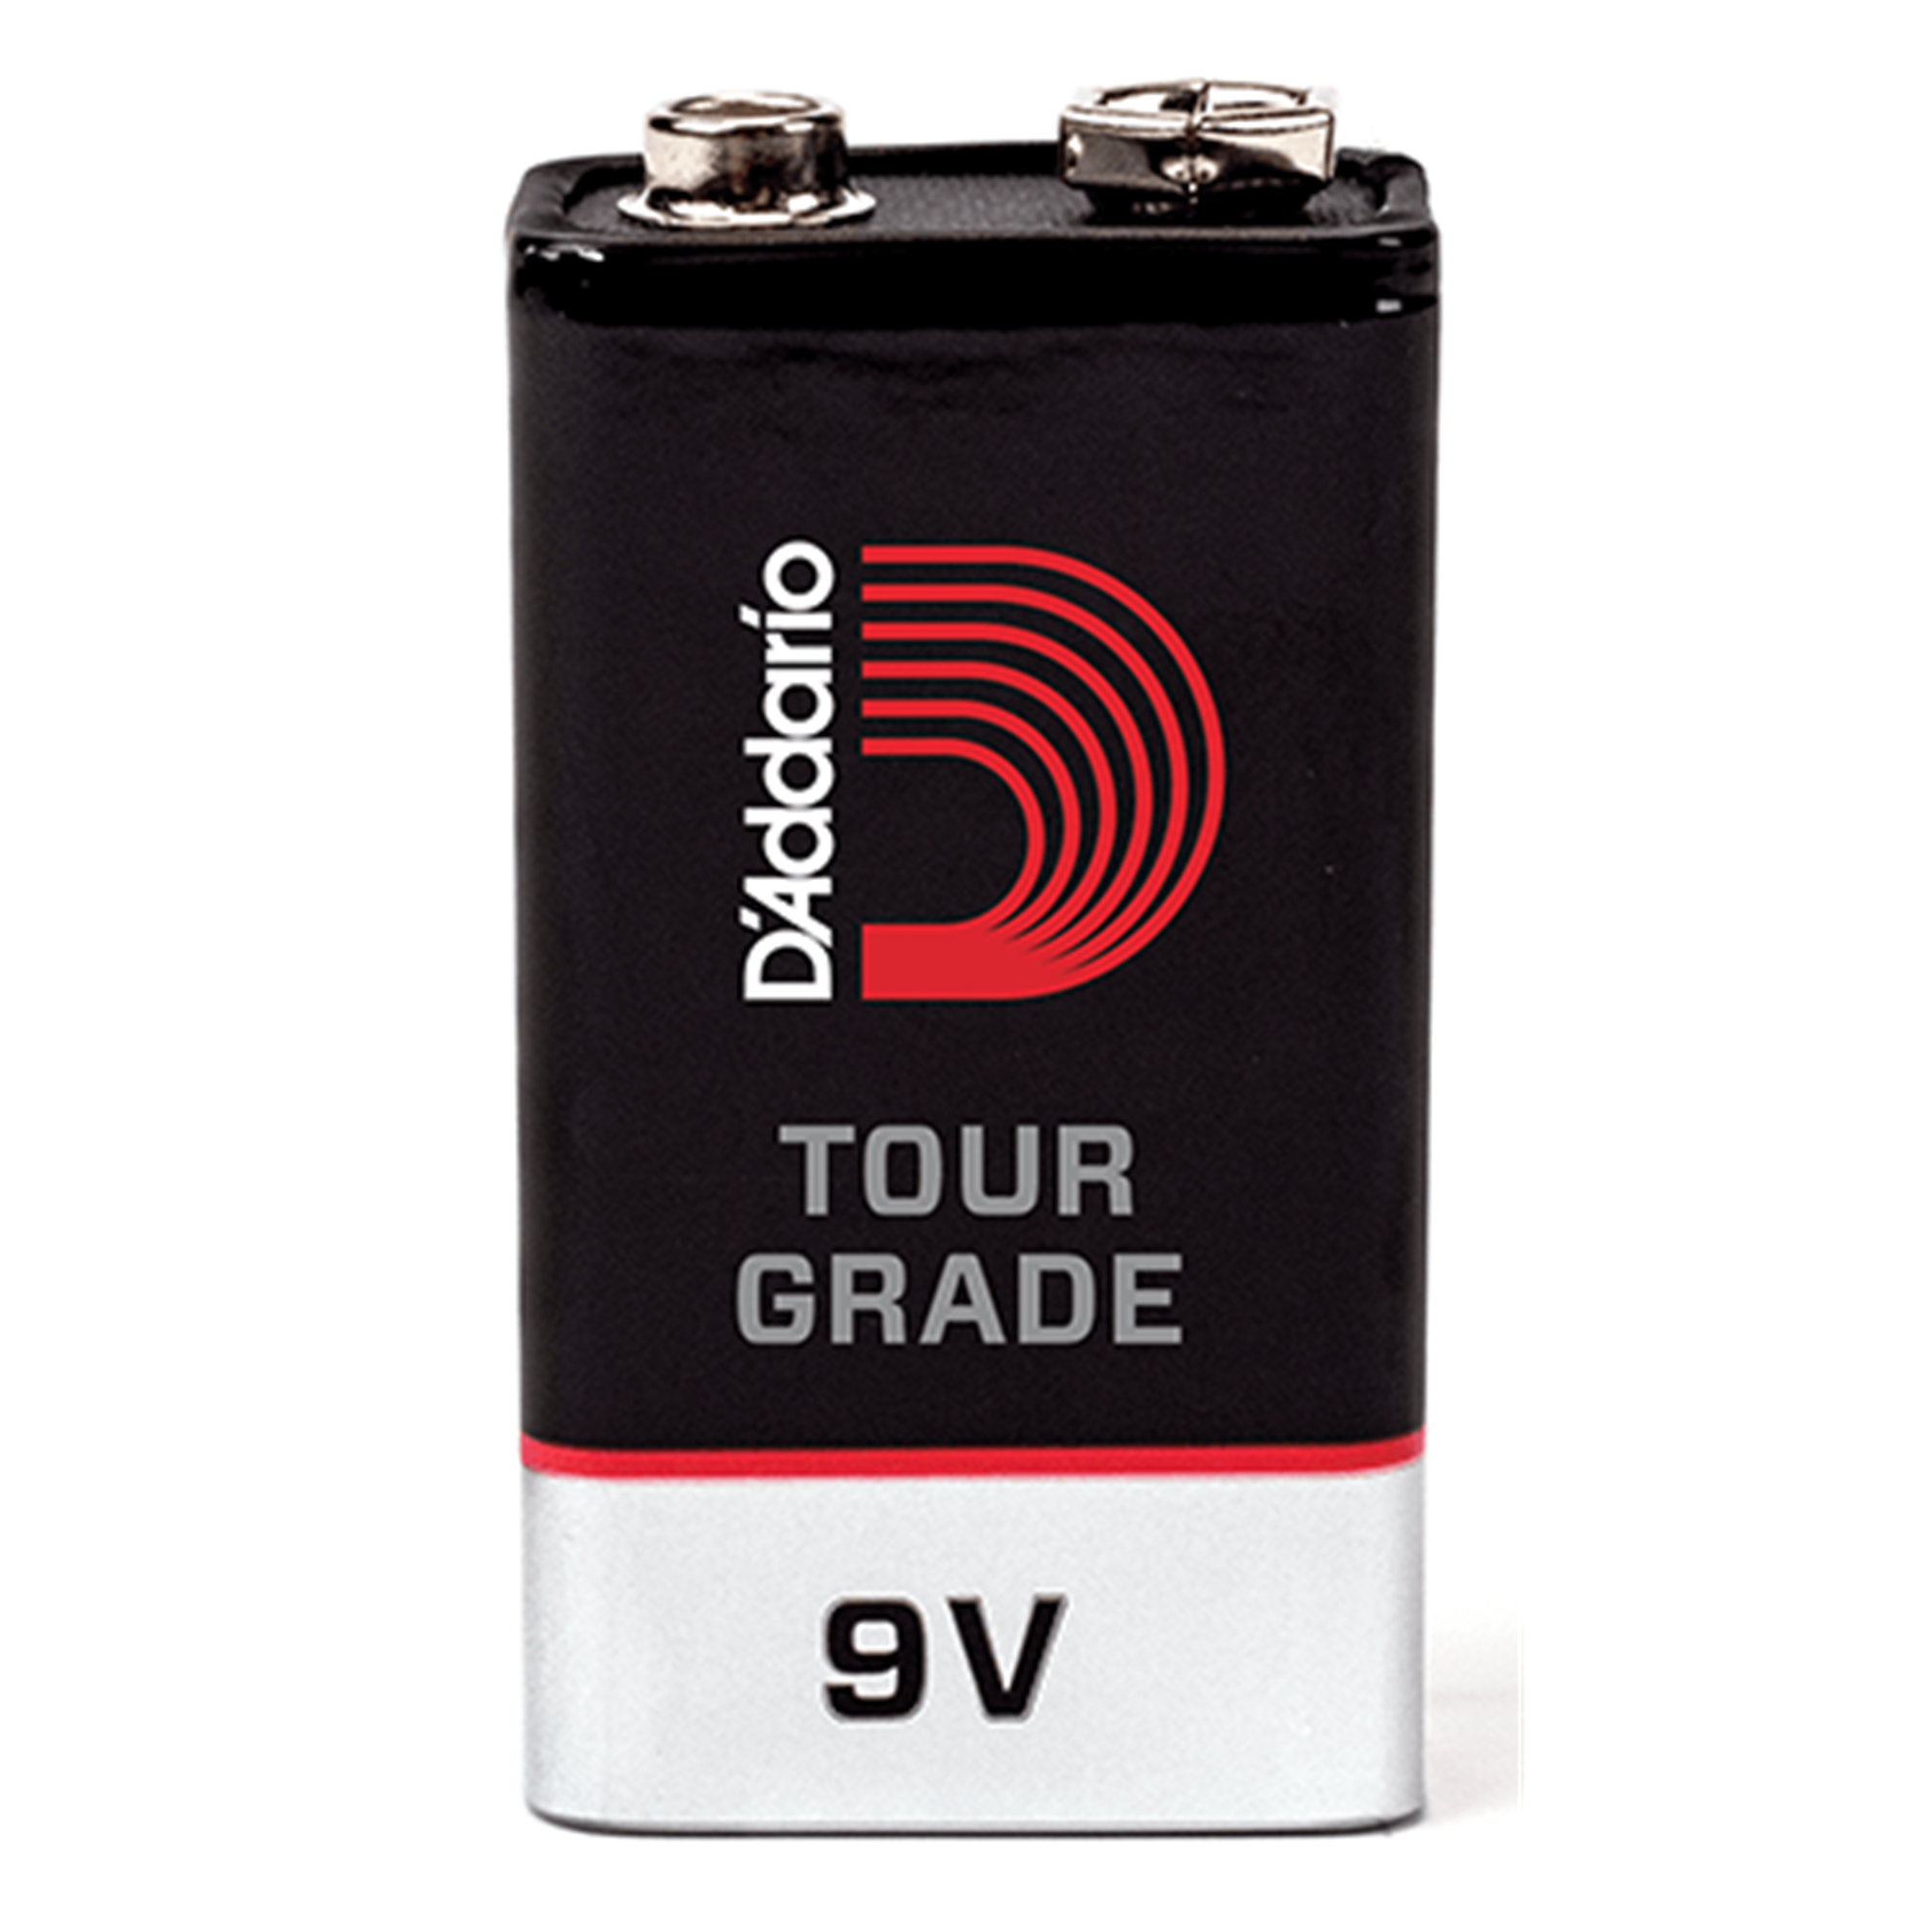 D'ADDARIO PW9V02 Tour-Grade 9v Battery, 2 pack